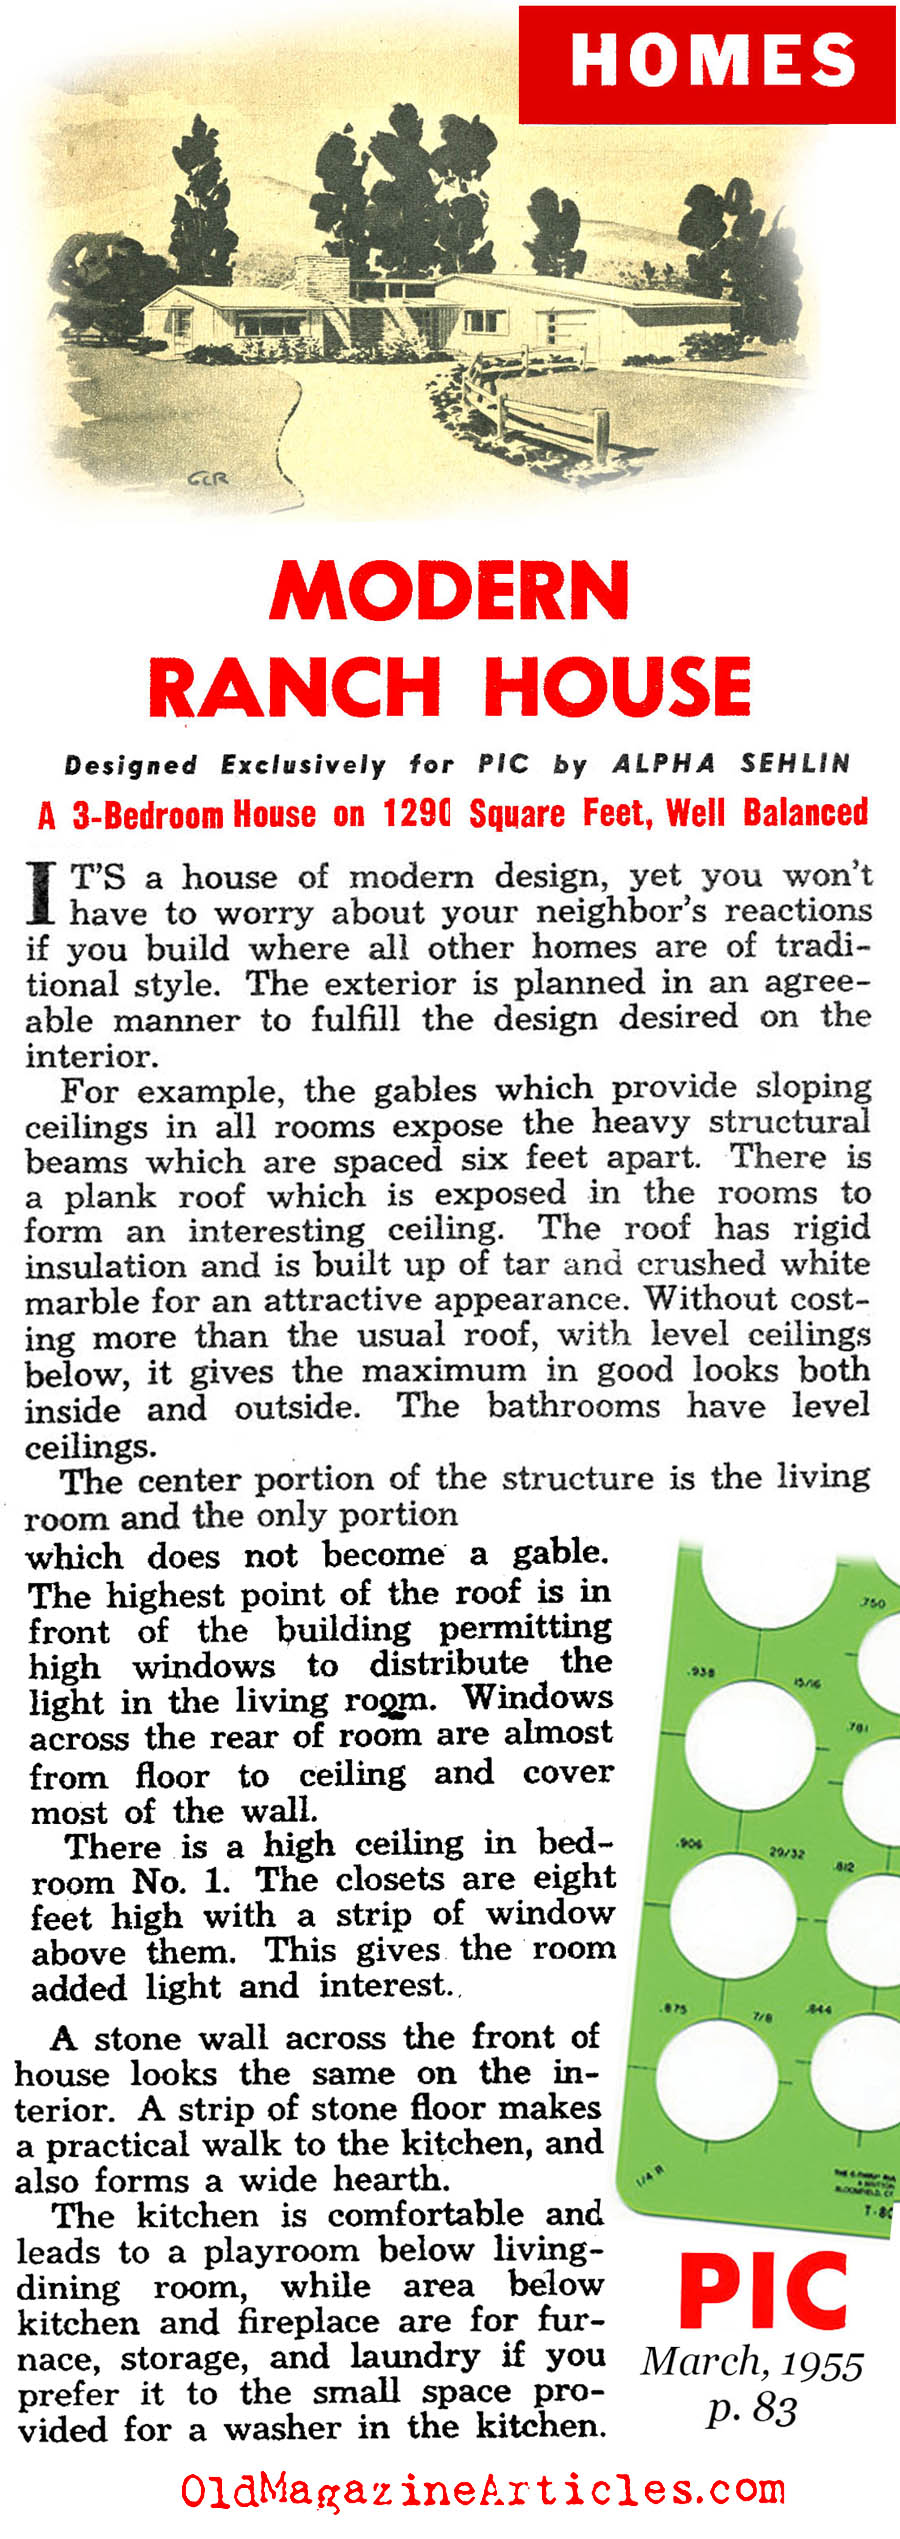 Building the Suburban Dream  (Pic Magazine, 1955)